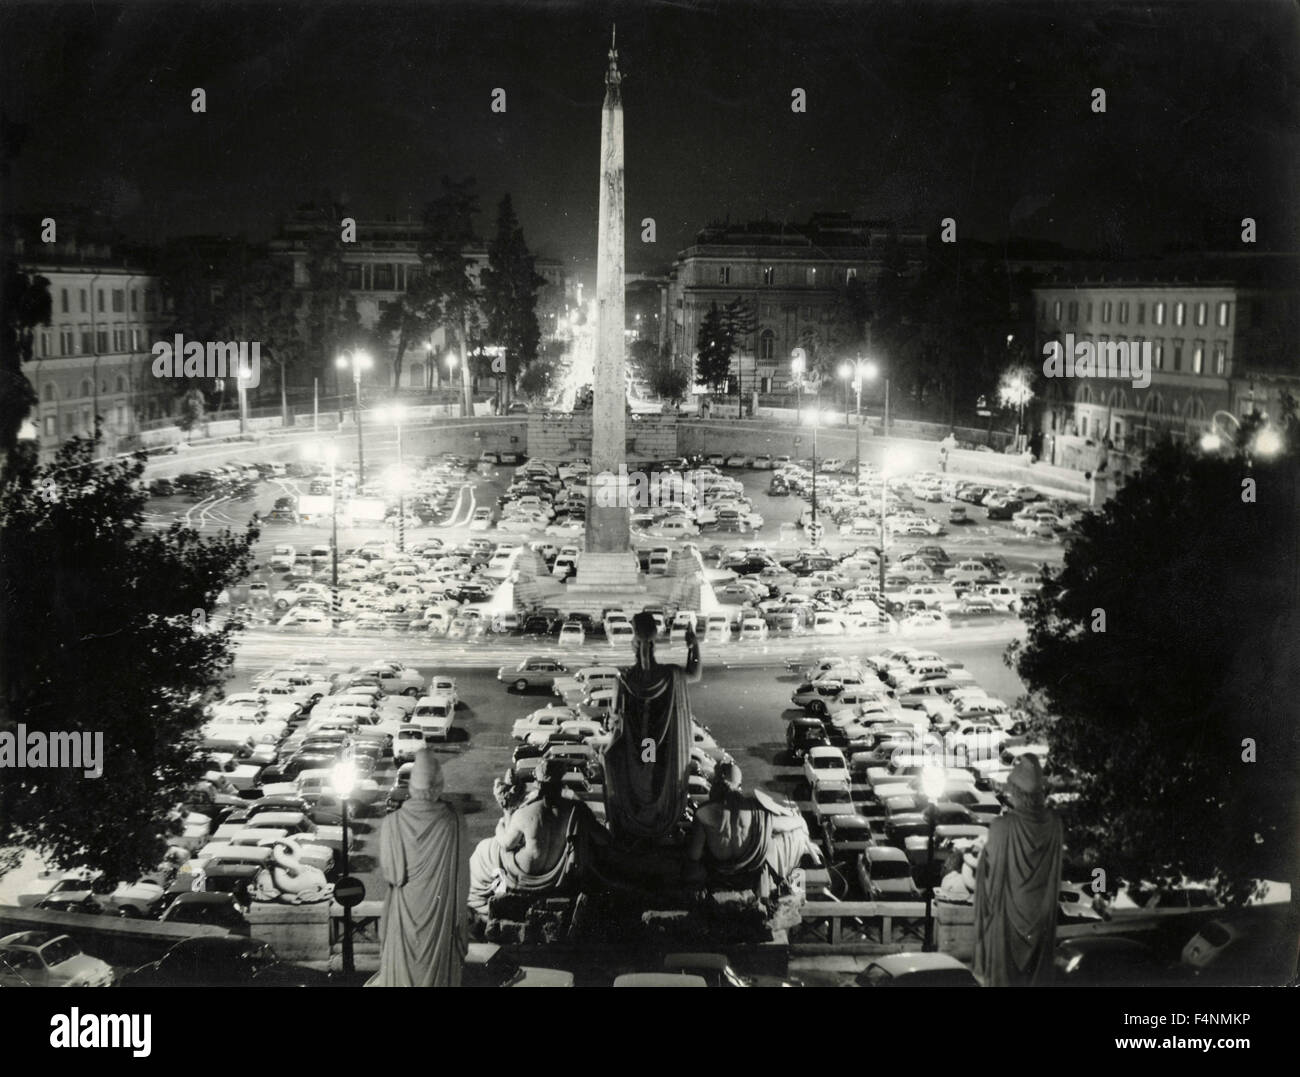 La Place du peuple envahi par les voitures, Rome, Italie Banque D'Images